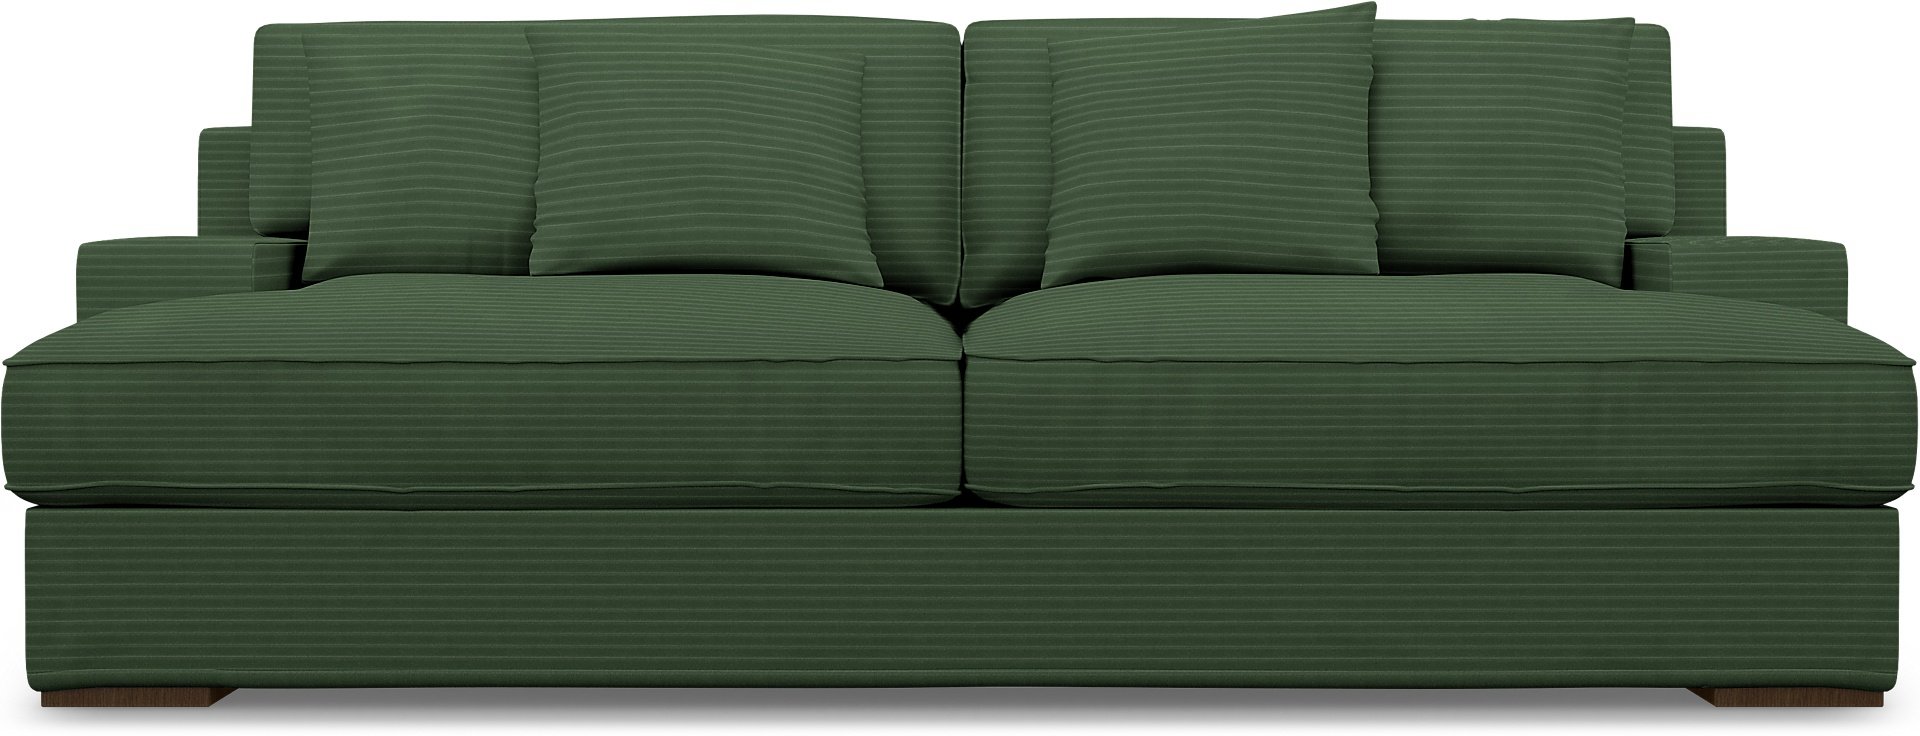 IKEA - Goteborg 3 Seater Sofa Cover, Palm Green, Corduroy - Bemz